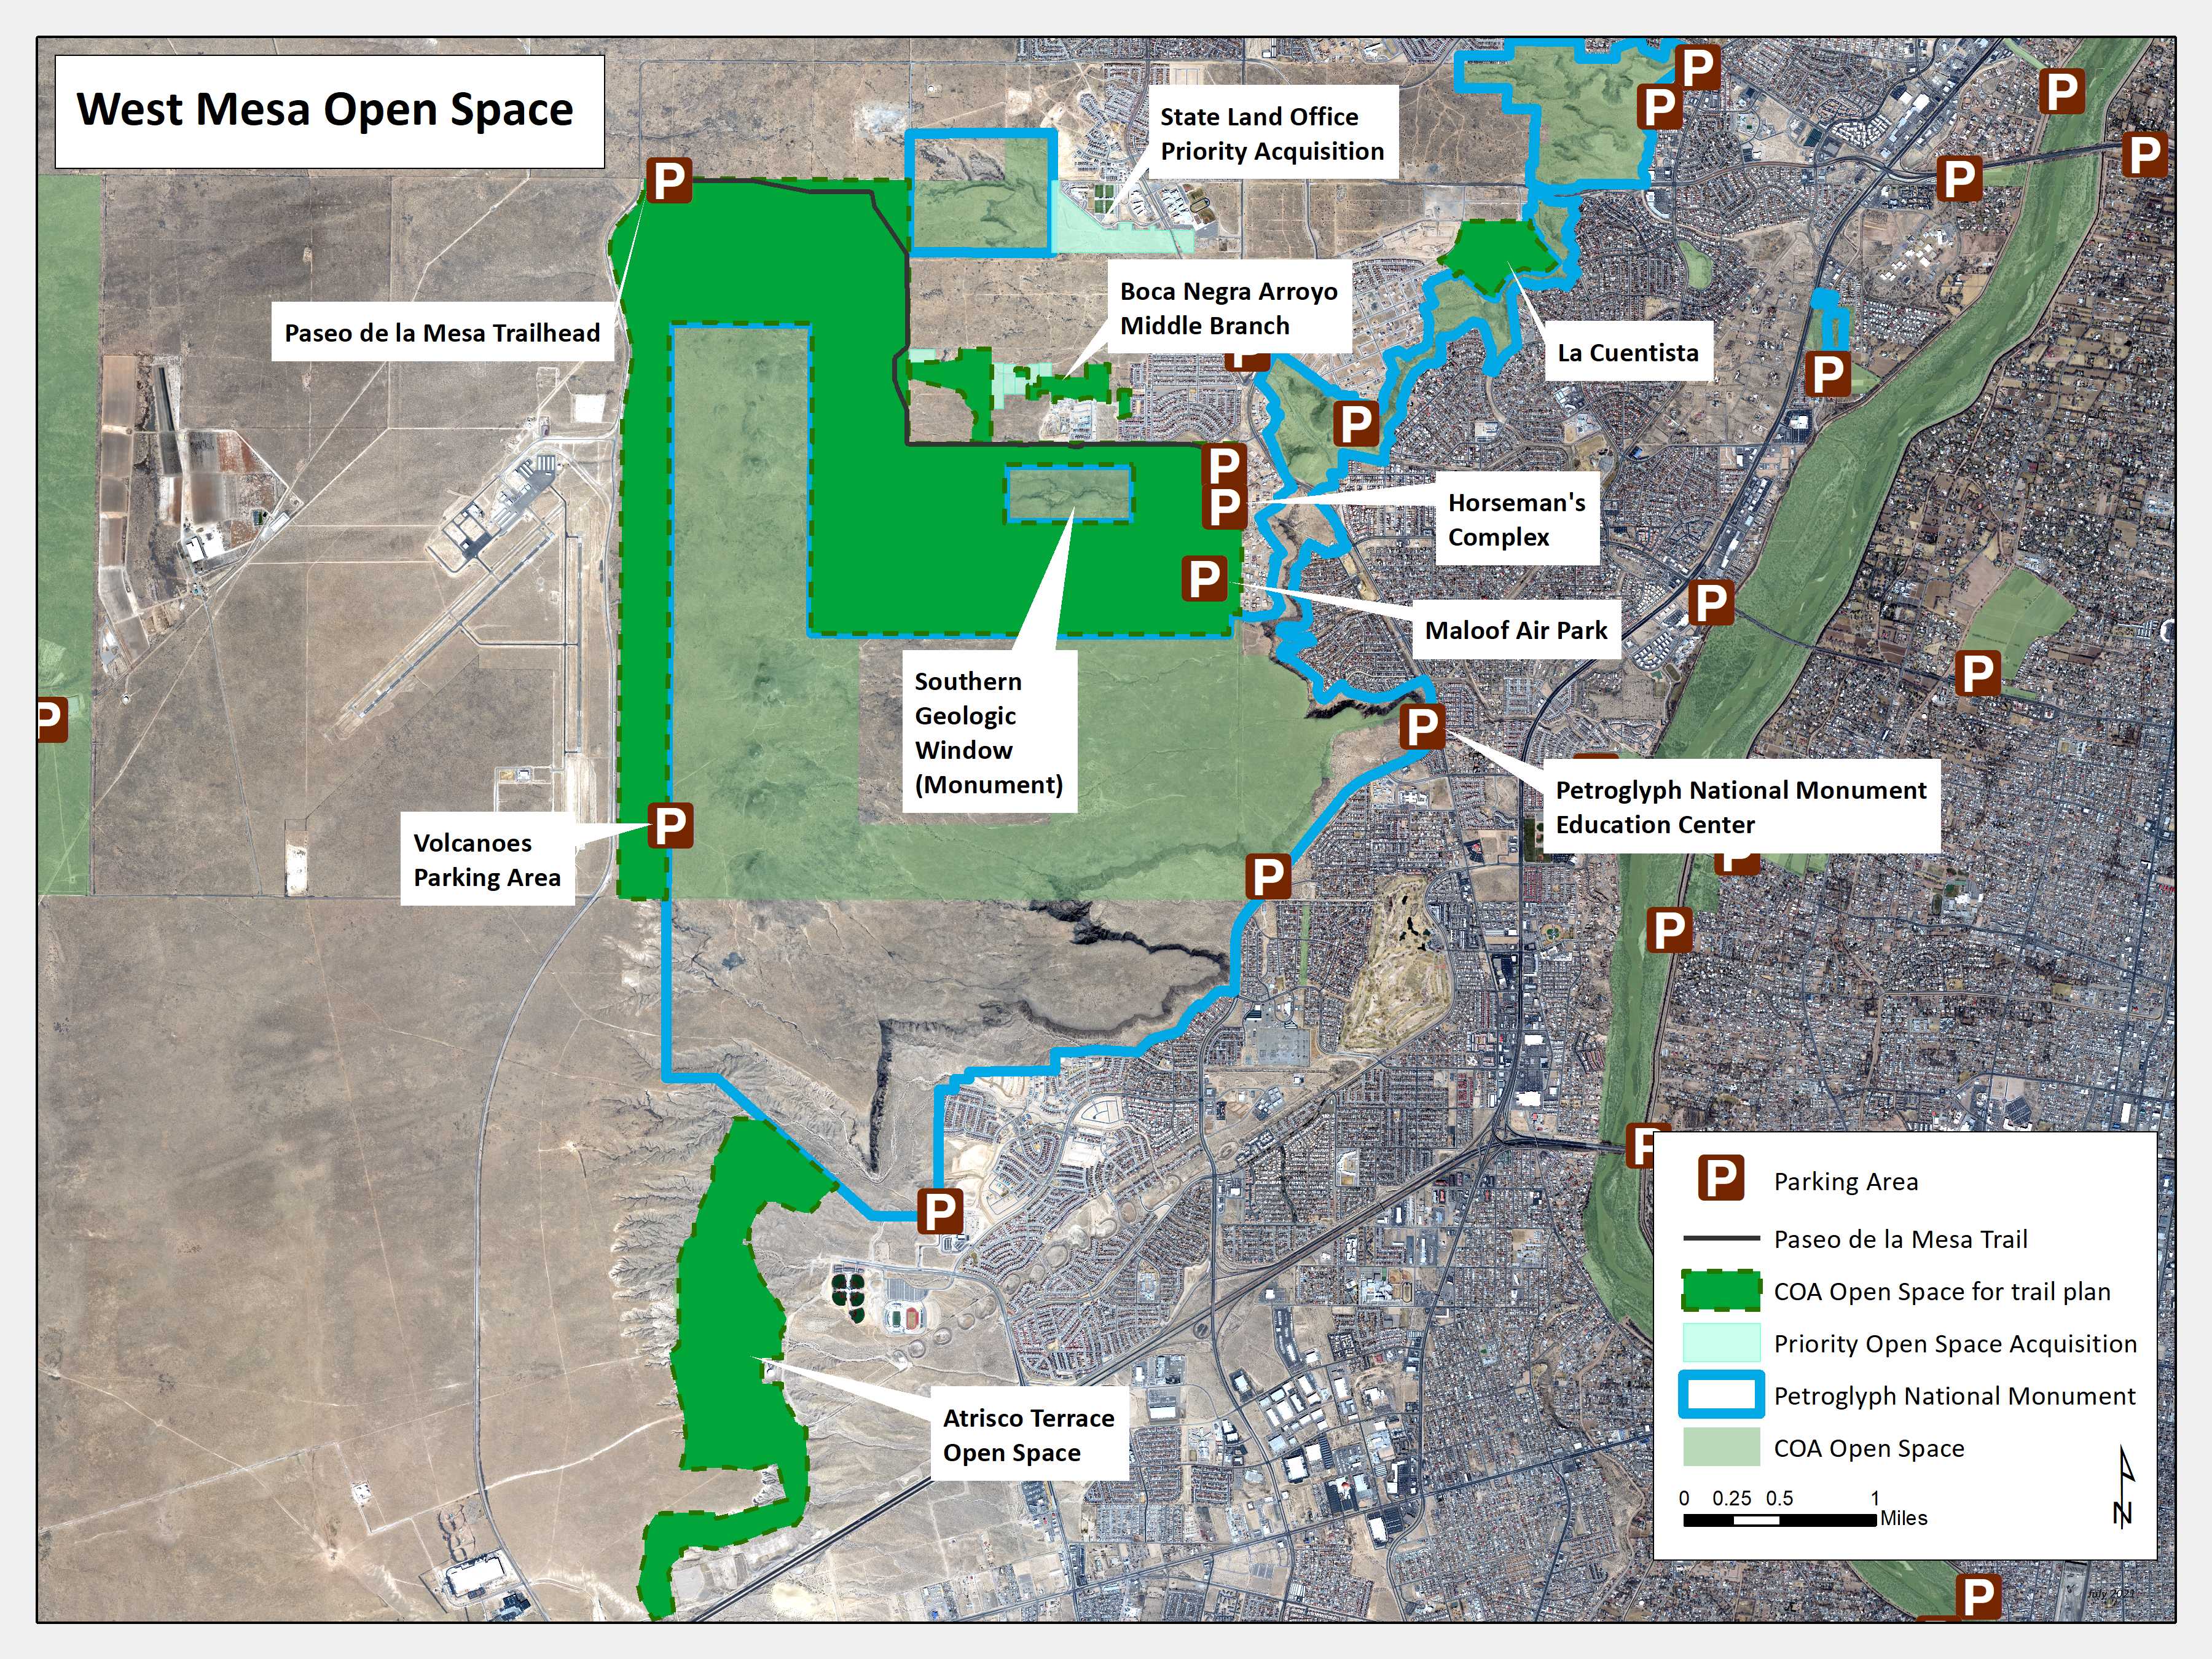 West Mesa Open Space Properties